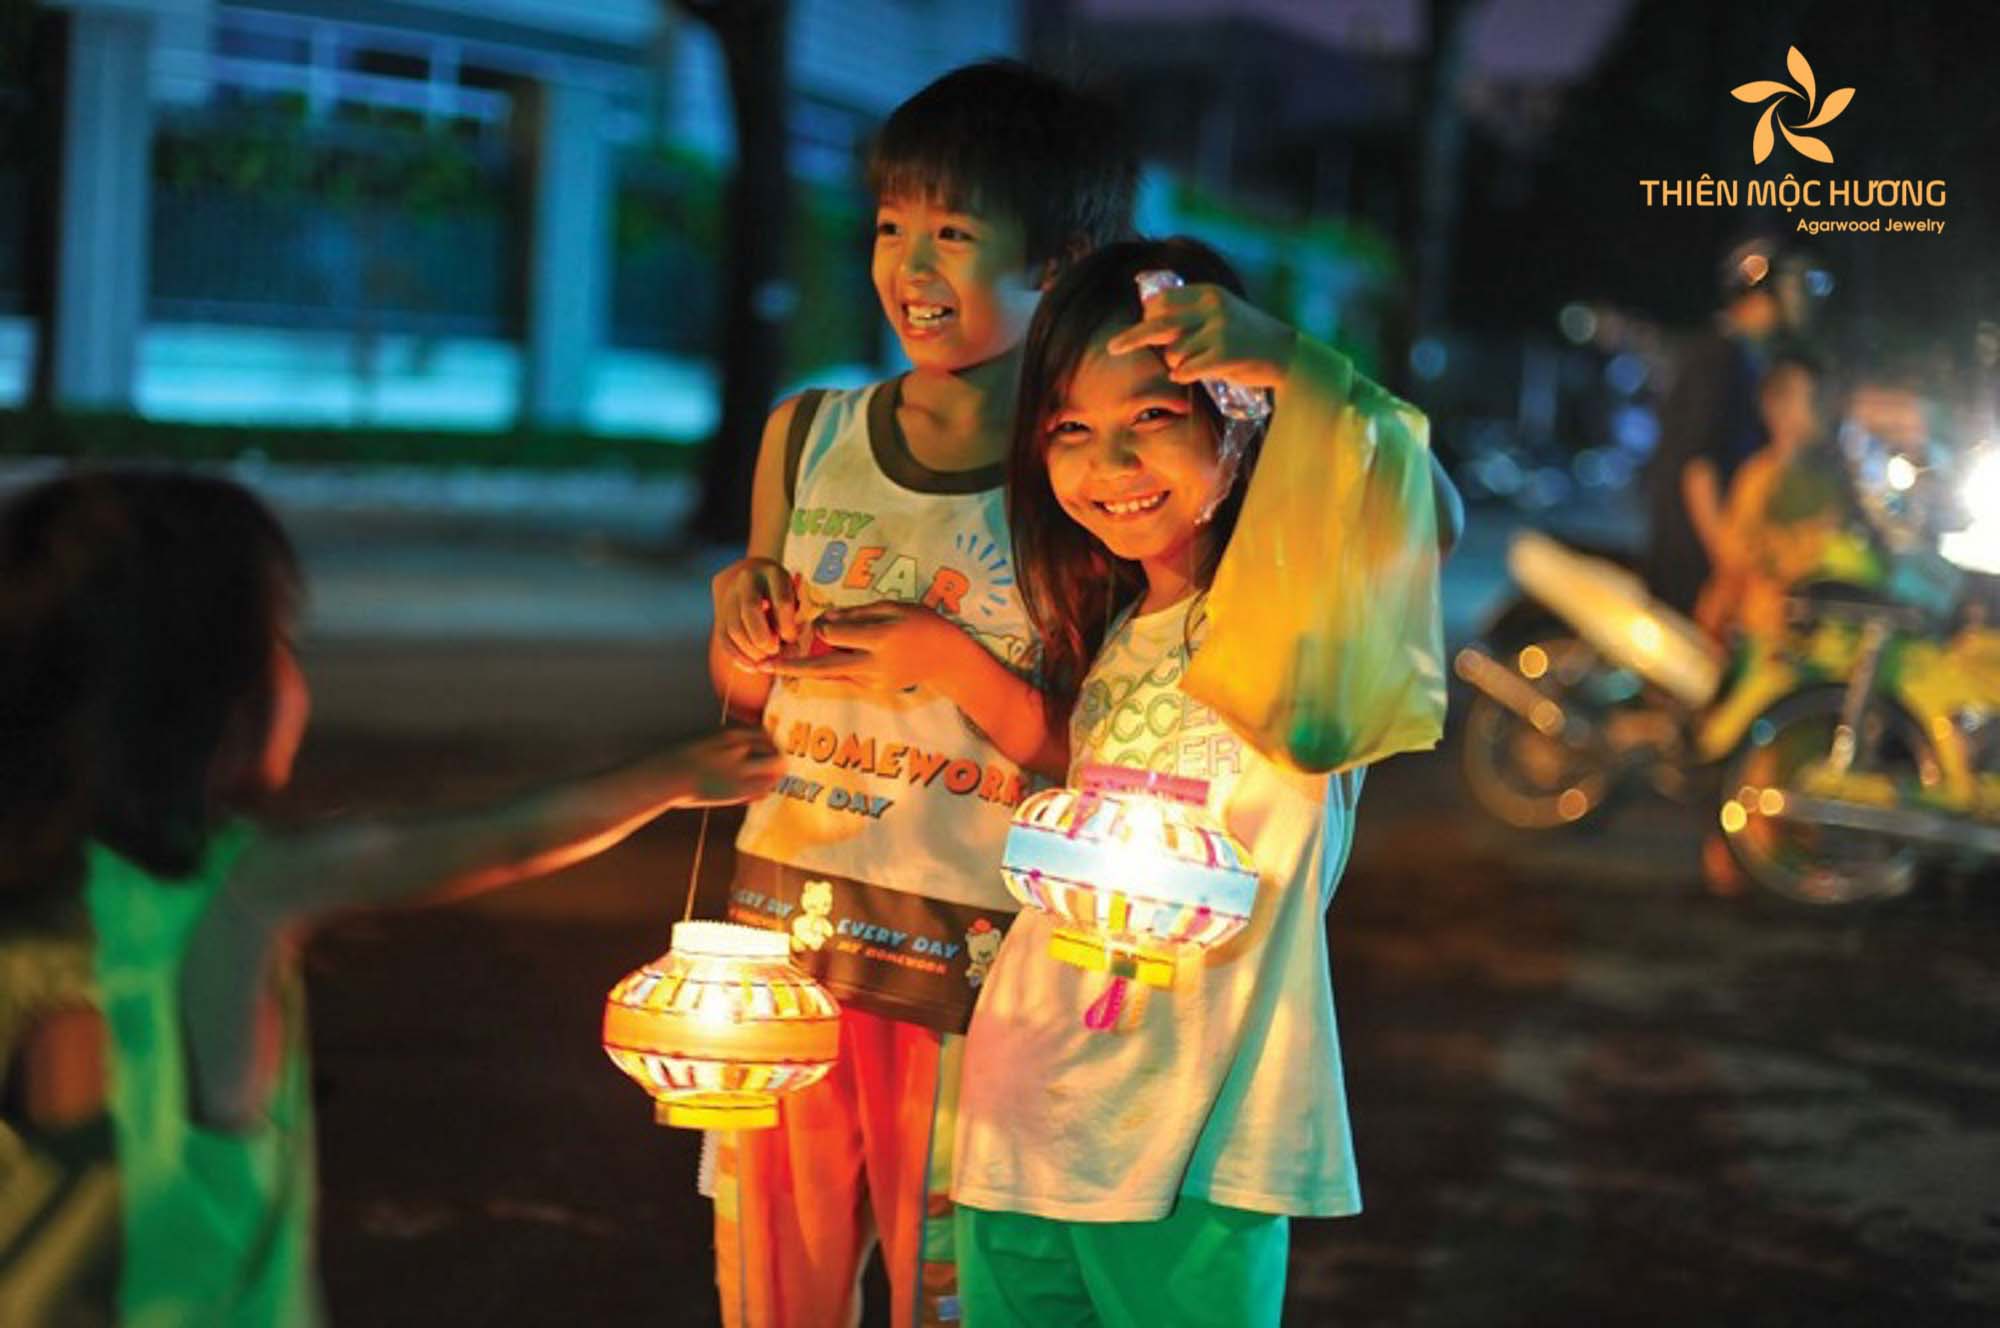 Lantern parade and lantern-making contest